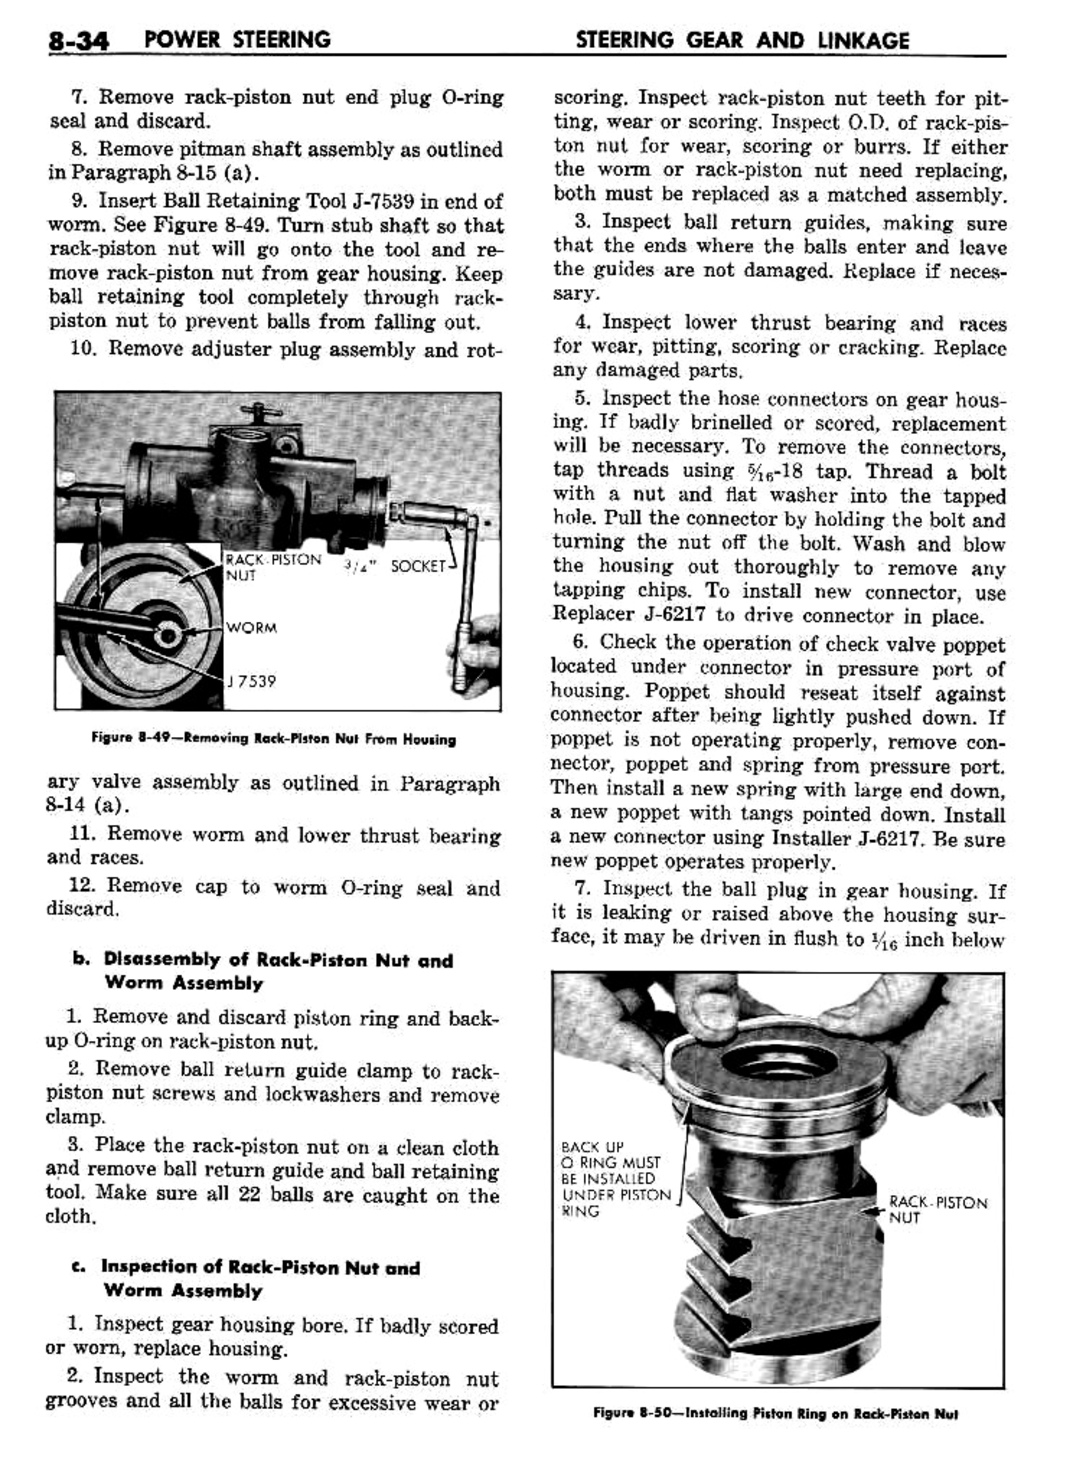 n_09 1960 Buick Shop Manual - Steering-034-034.jpg